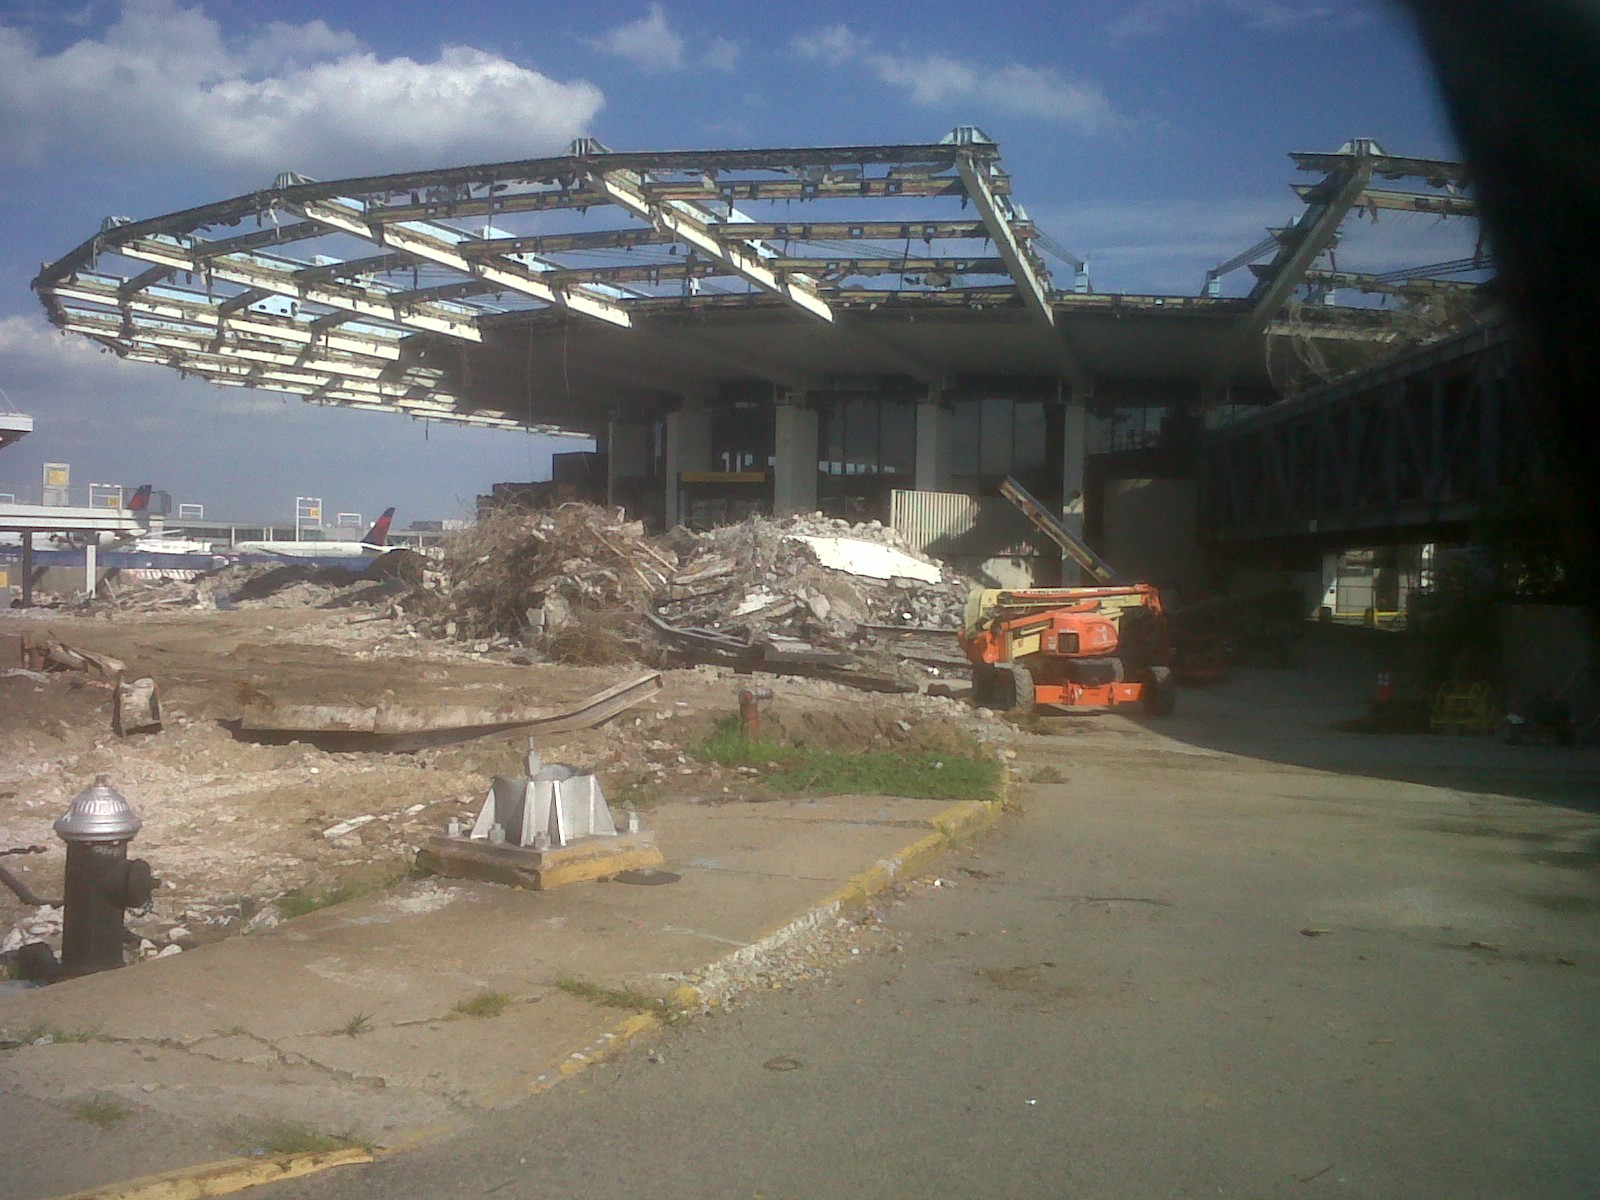 Demolition of the Worldport, August 10, 2013